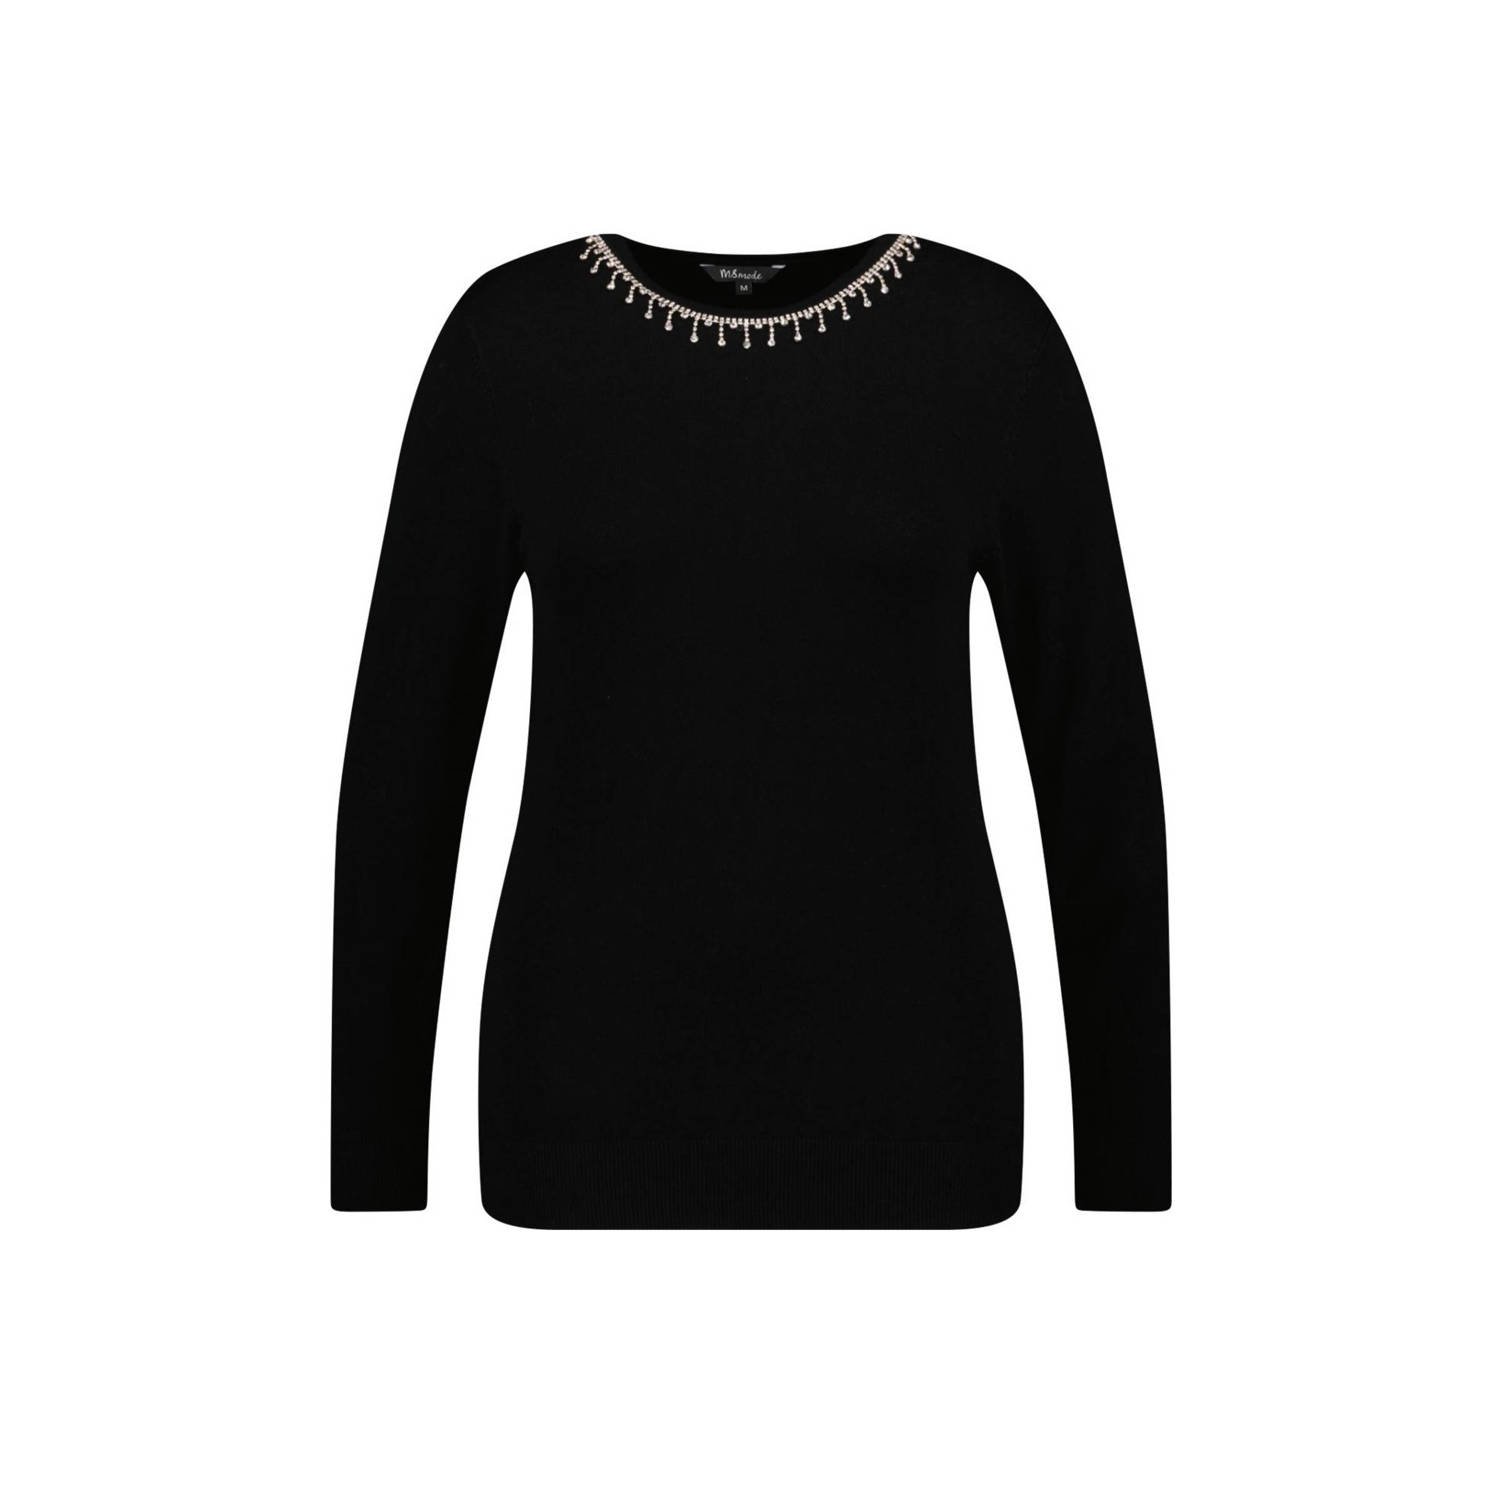 MS Mode fijngebreide trui met strass steentjes zwart